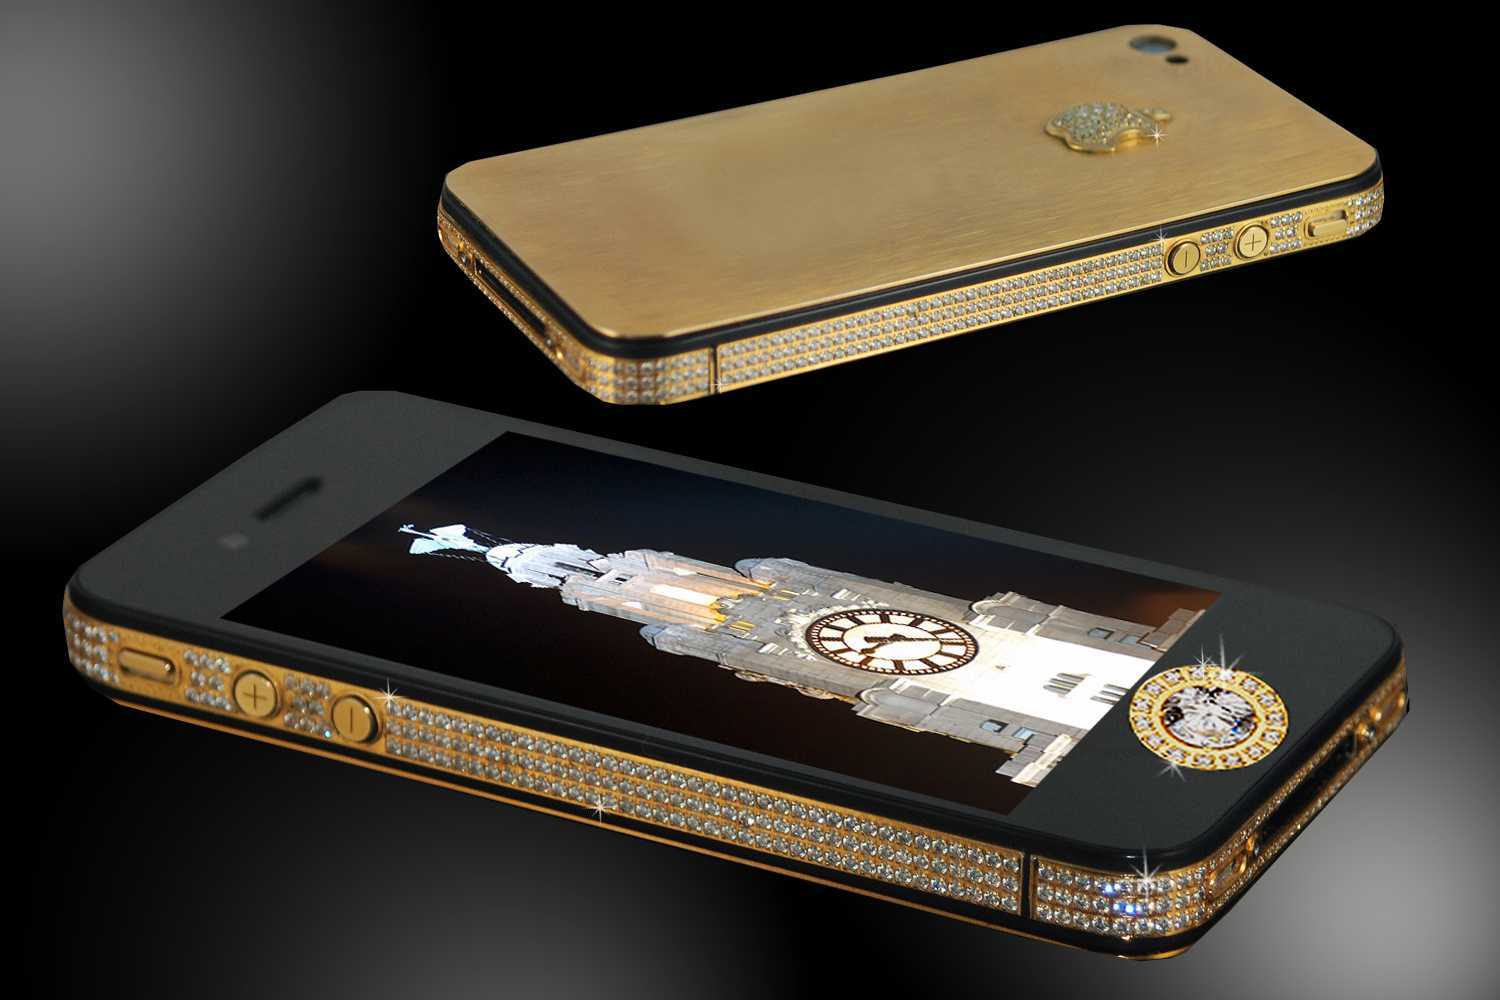 Красивые телефоны недорого. Stuart Hughes iphone 4s Elite Gold. Iphone 4s Elite Gold. Айфон 5 Black Diamond Edition. Айфон 5 диамонд Блэк.